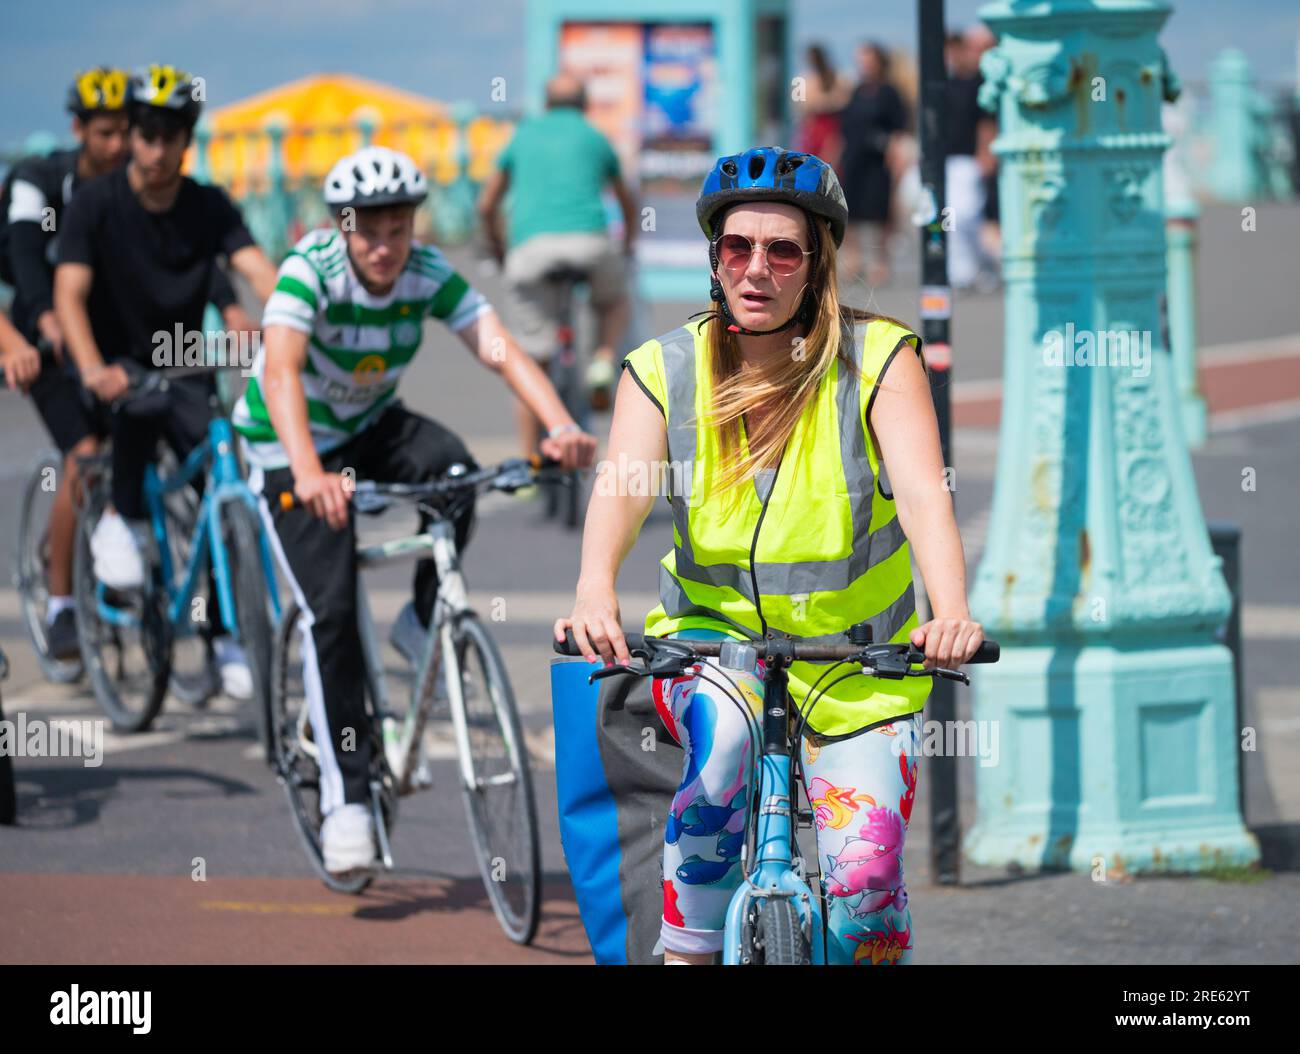 Groupe de cyclistes à vélo dans une piste cyclable sur la promenade du front de mer à Brighton, Brighton & Hove, East Sussex, Angleterre, Royaume-Uni. Banque D'Images